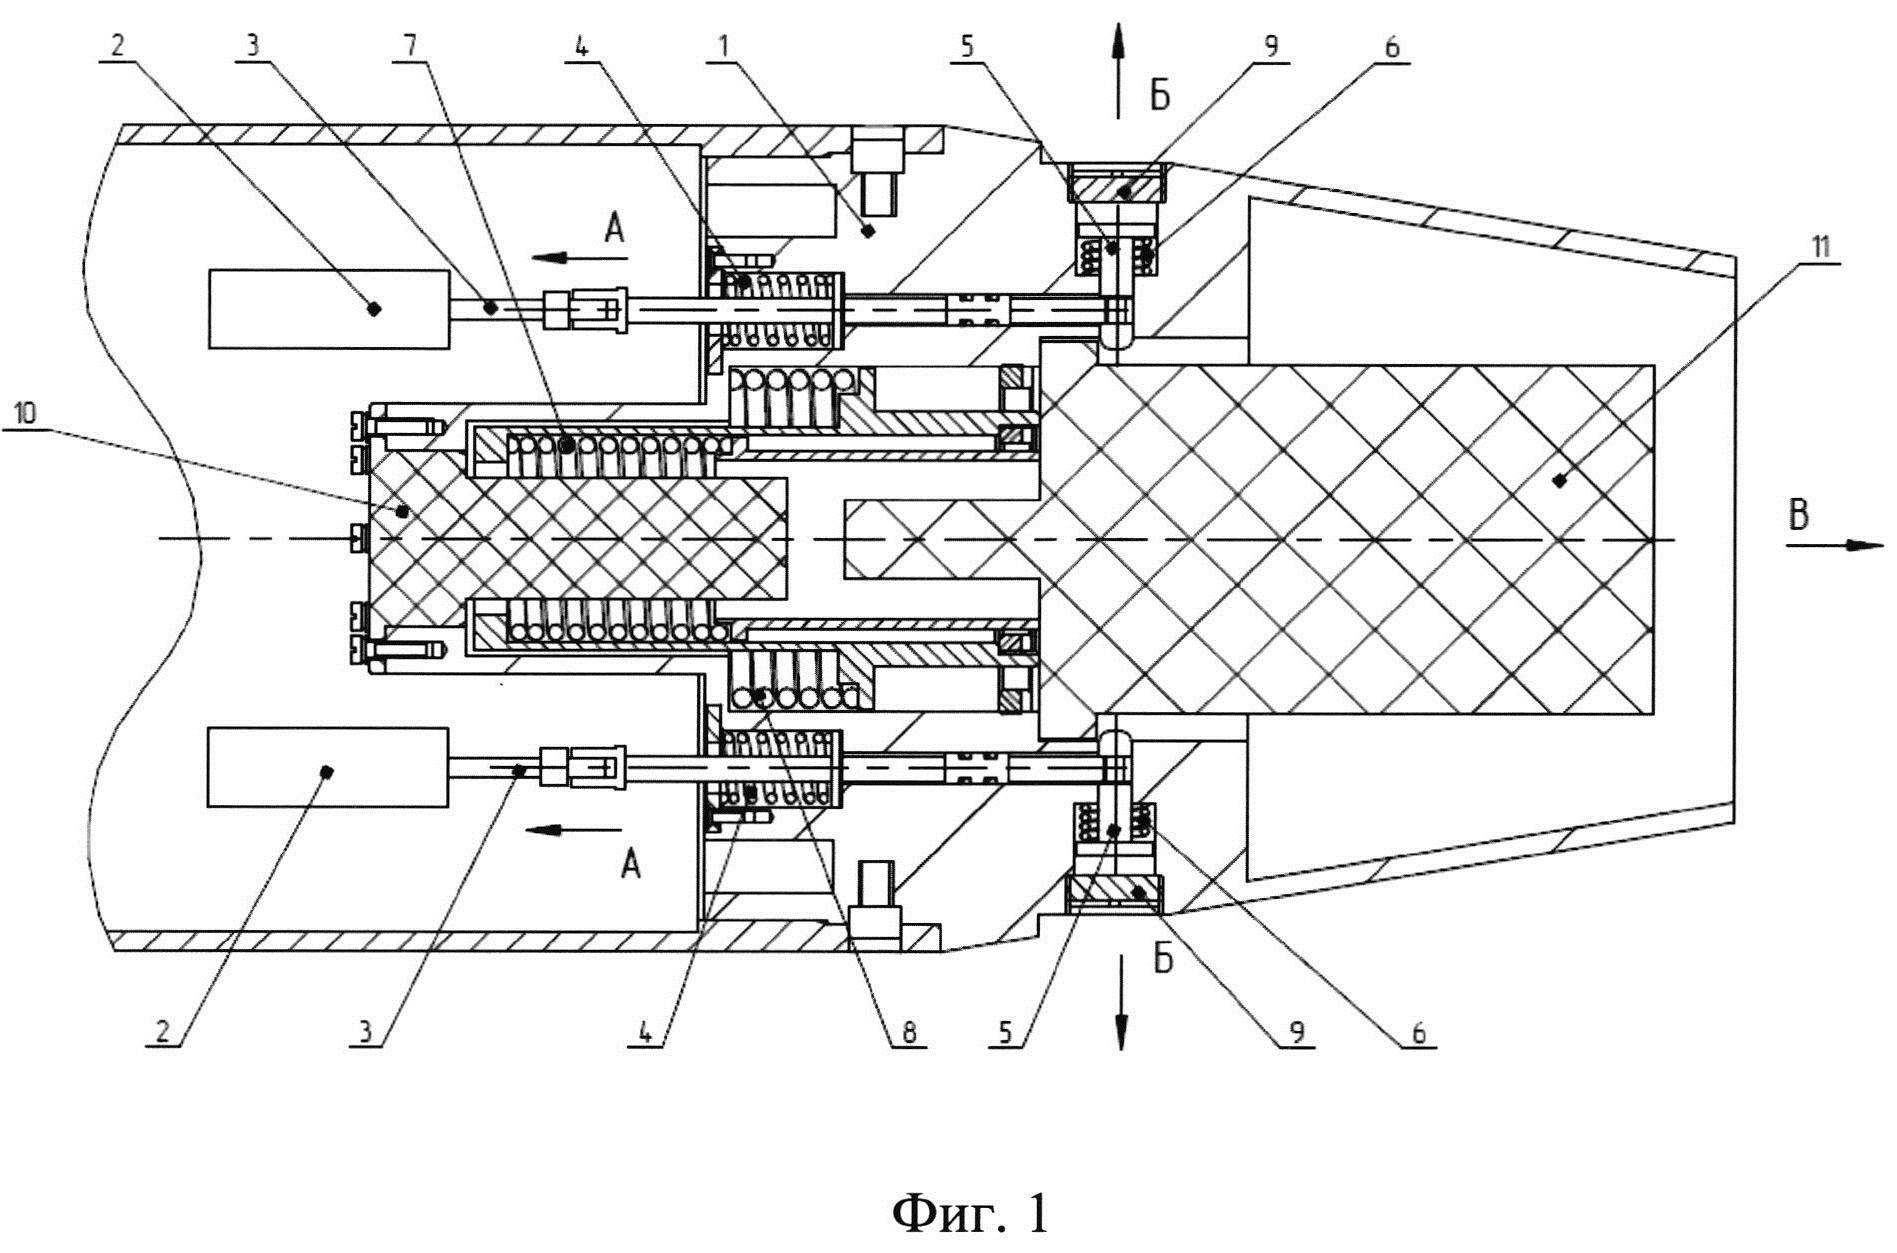 Устройство крепления и отделения малого объекта (буя) от высокоскоростного подводного объекта